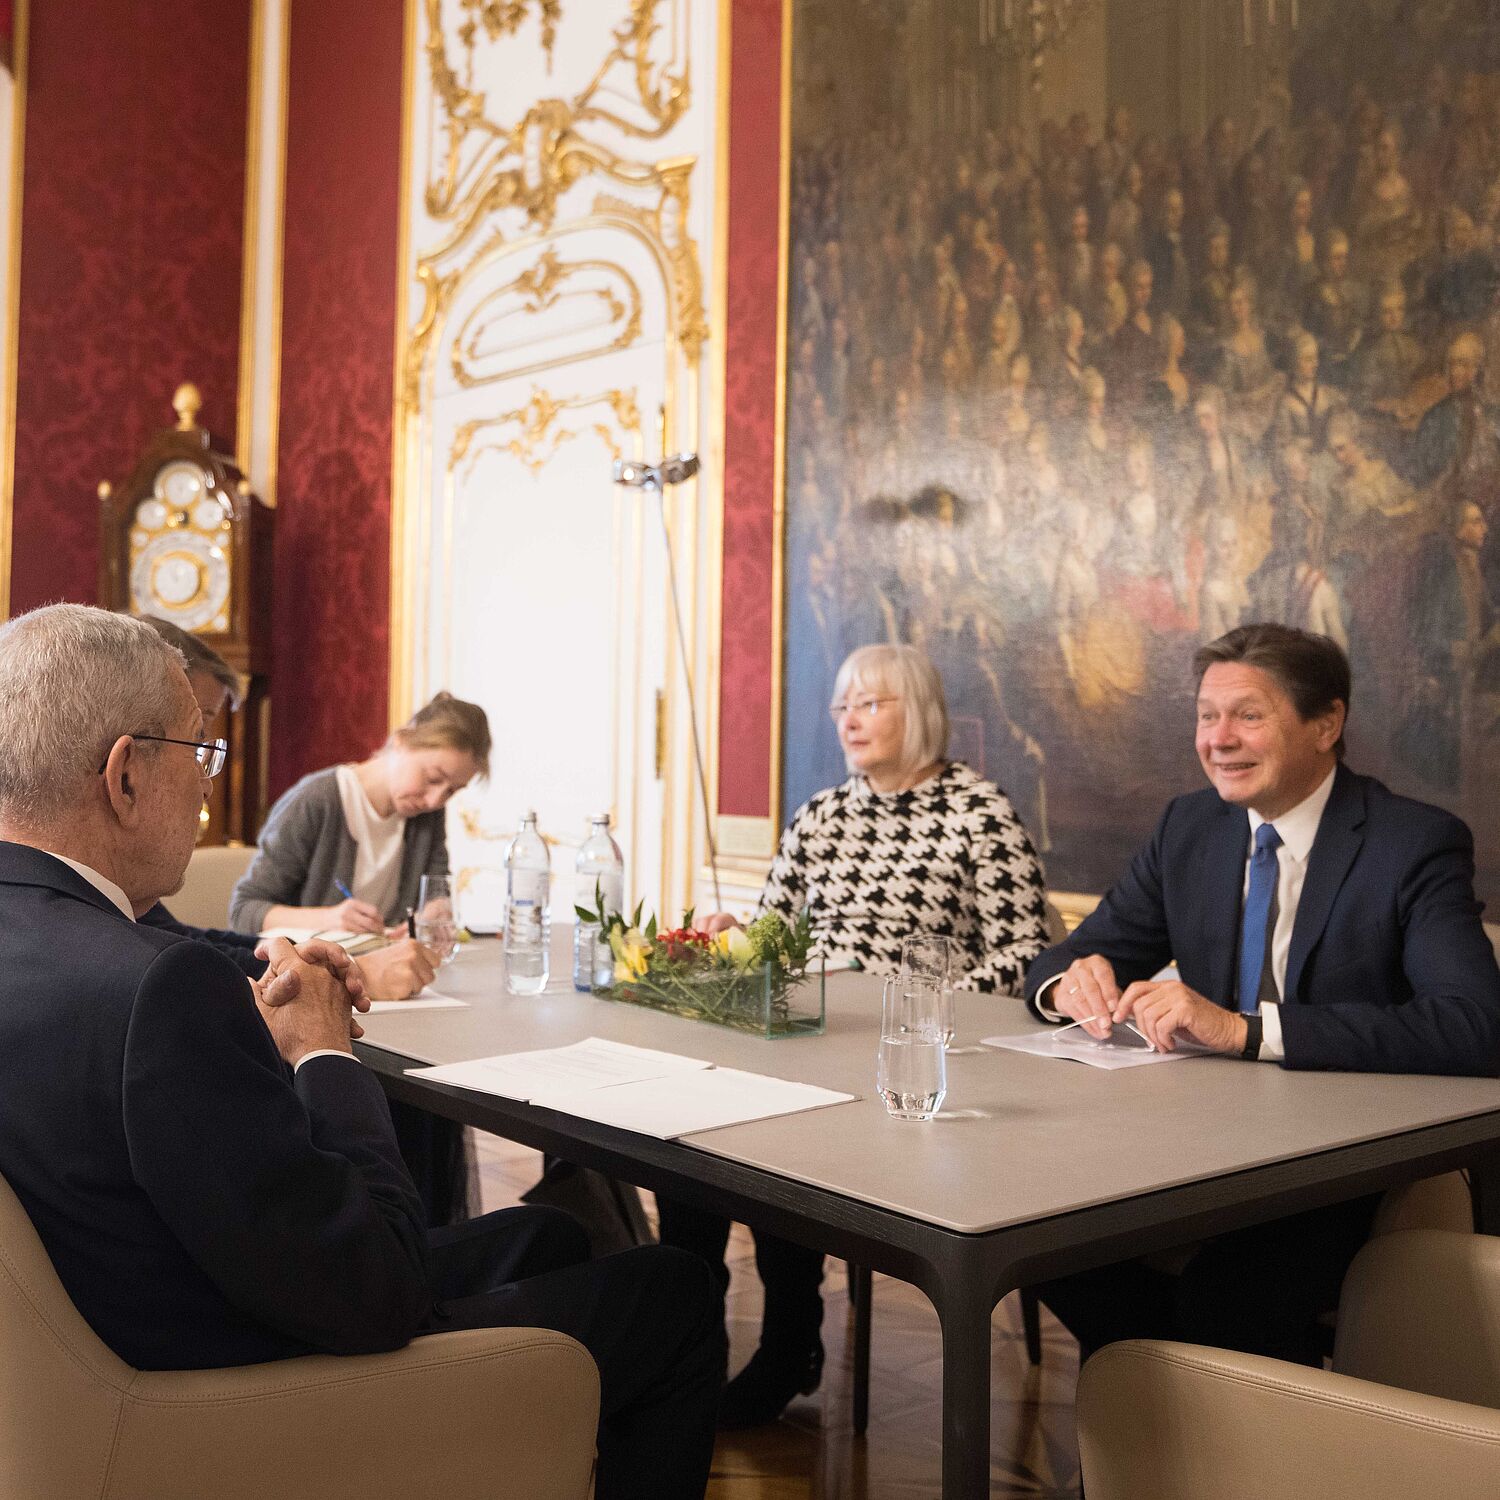 Bundespräsident Alexander Van der Bellen traf seine energiepolitischen Berater, Wolfgang Anzengruber und Angela Köppl, zum Lage-Update.